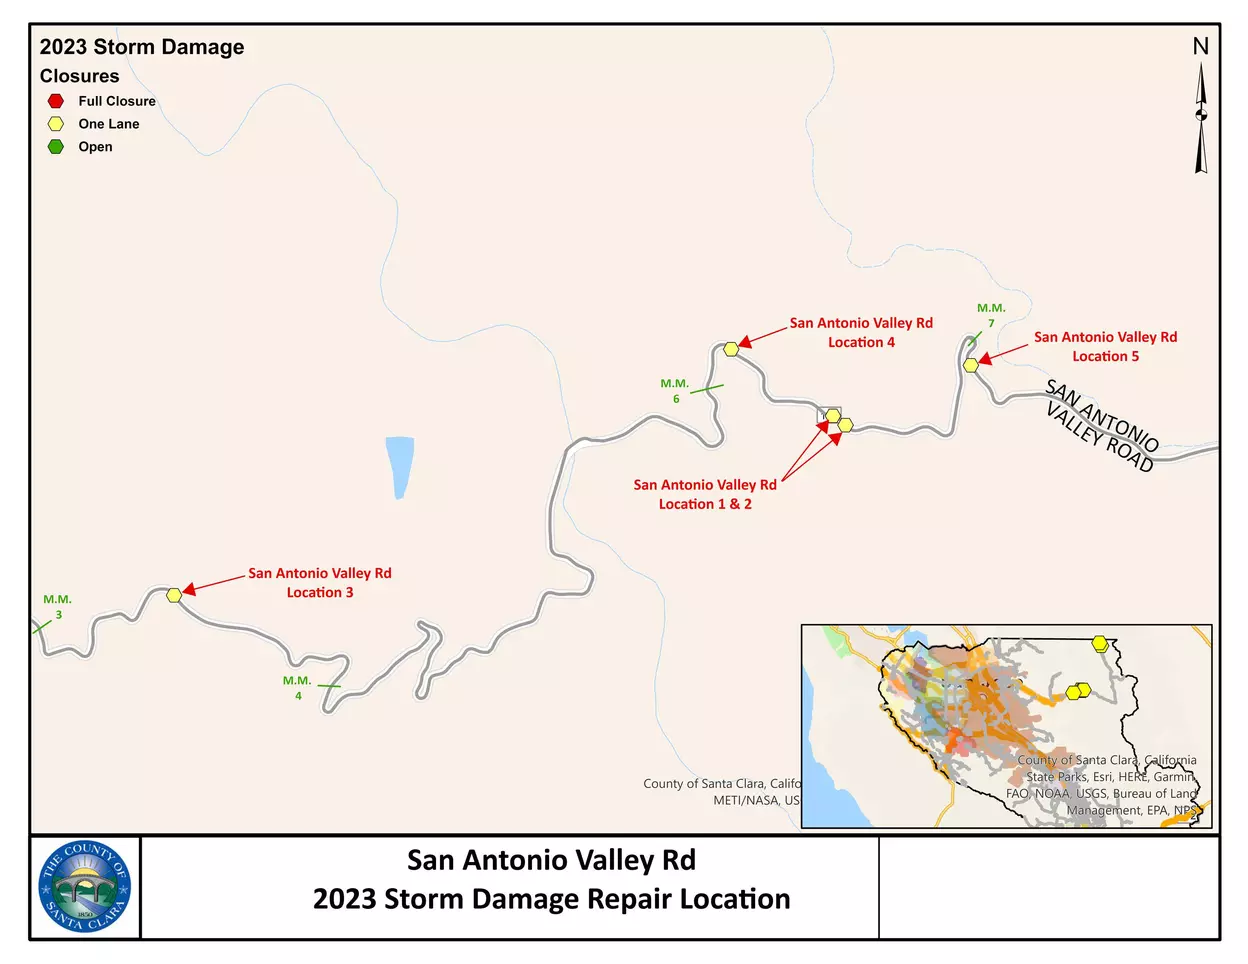 San Antonio Valley Road Site 2 Proximity Map